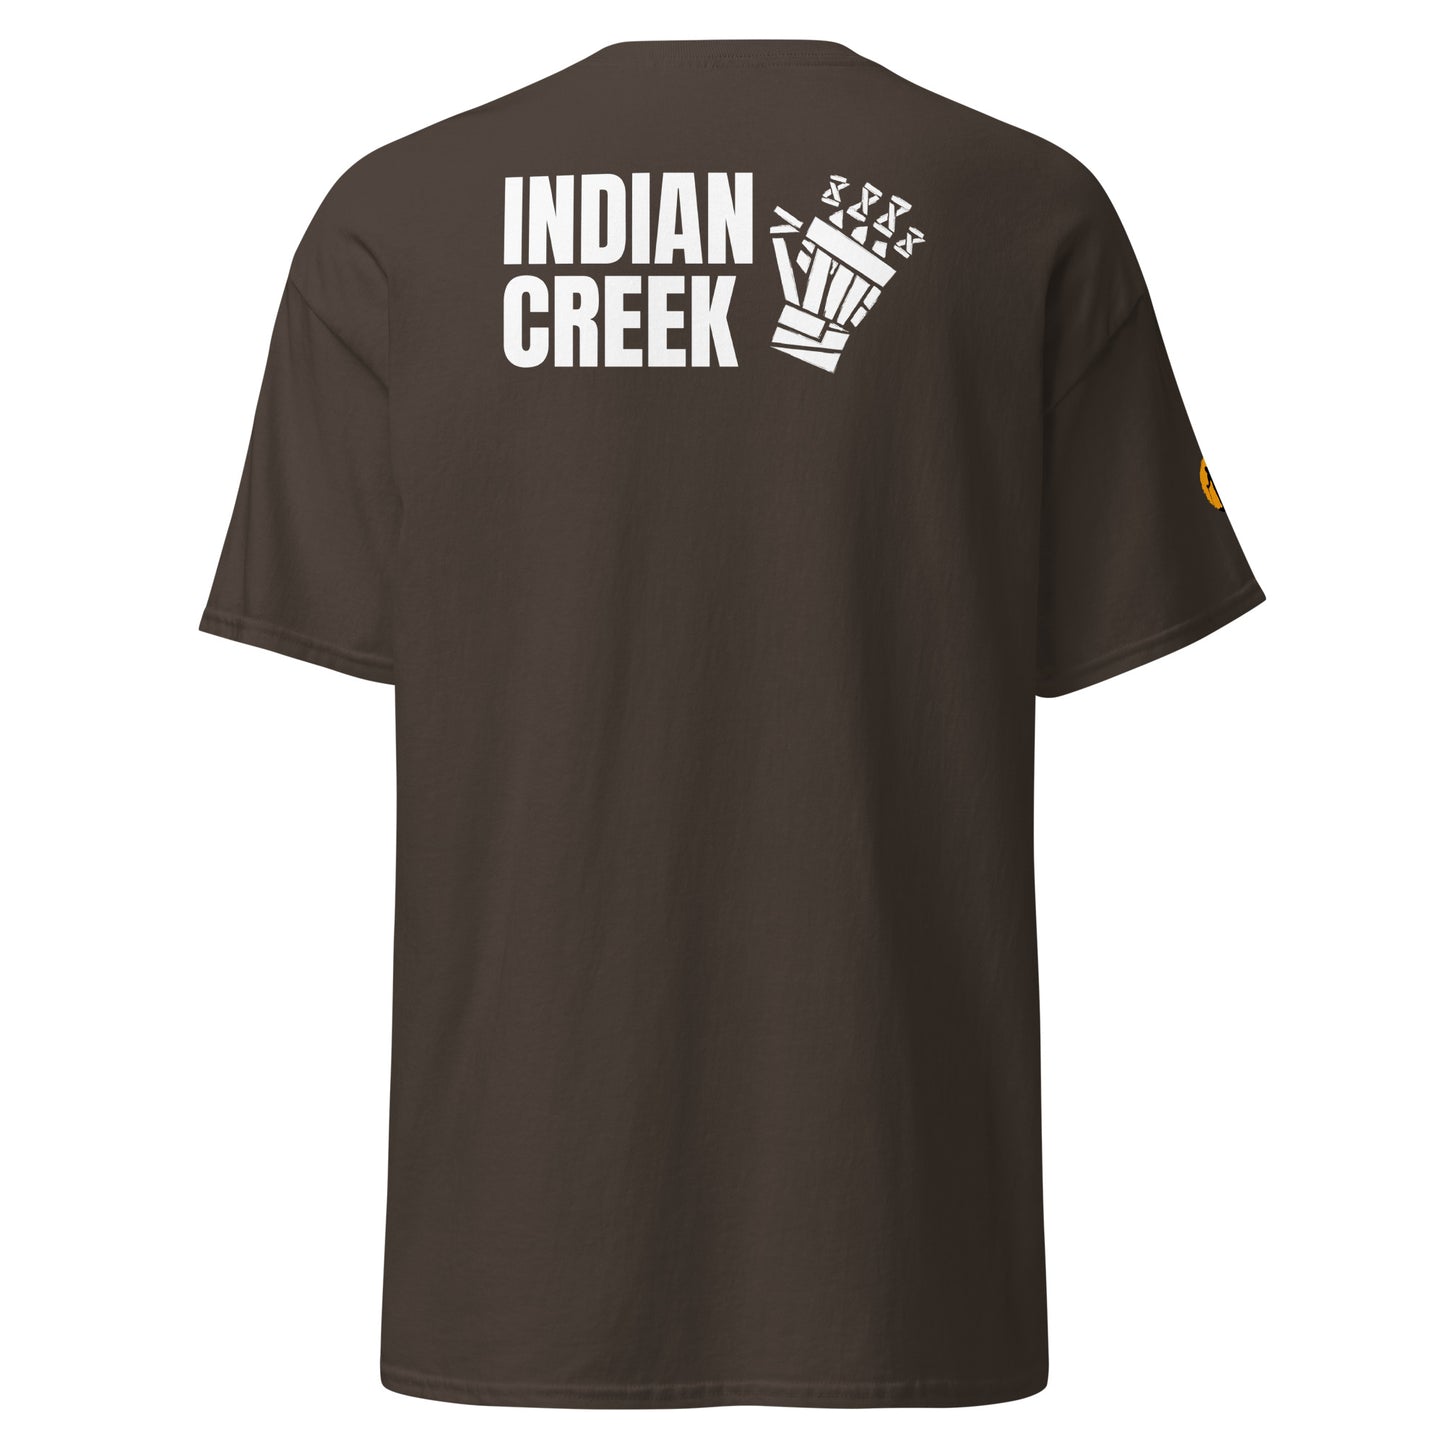 Indian Creek classic tee